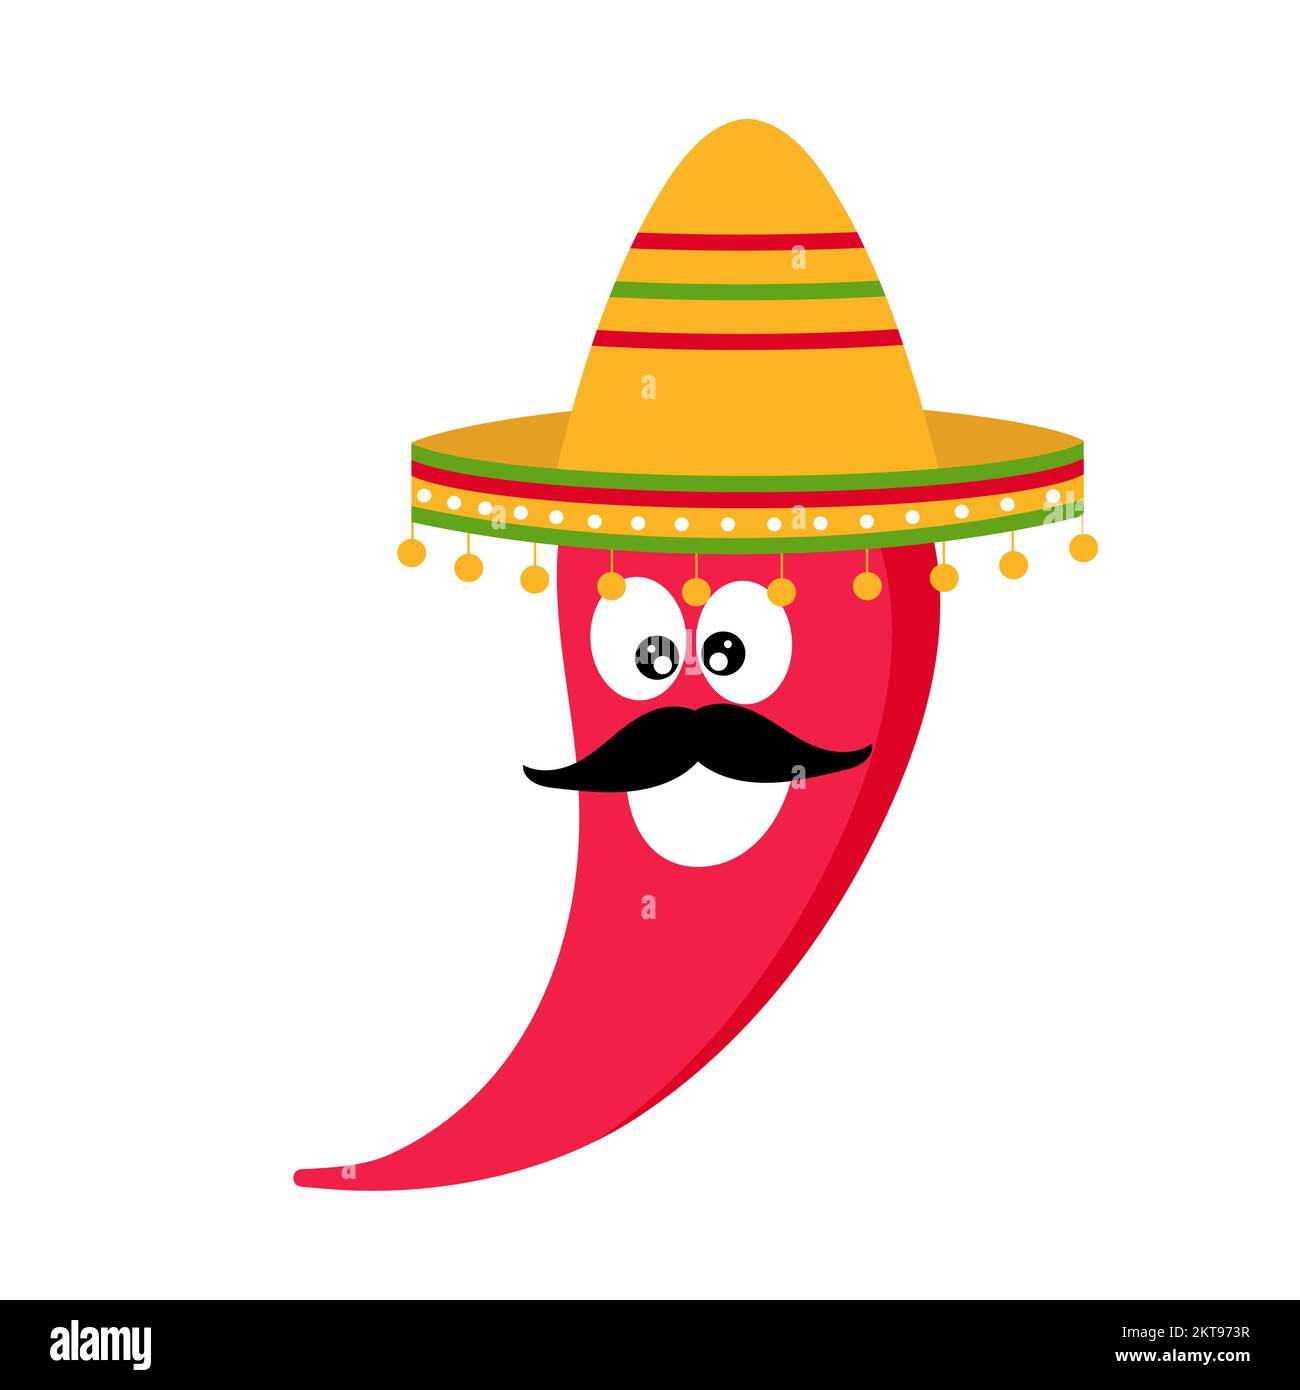 Vector illustration for Cinco de Mayo with chili pepper. Chili pepper in sombrero. Stock Vector